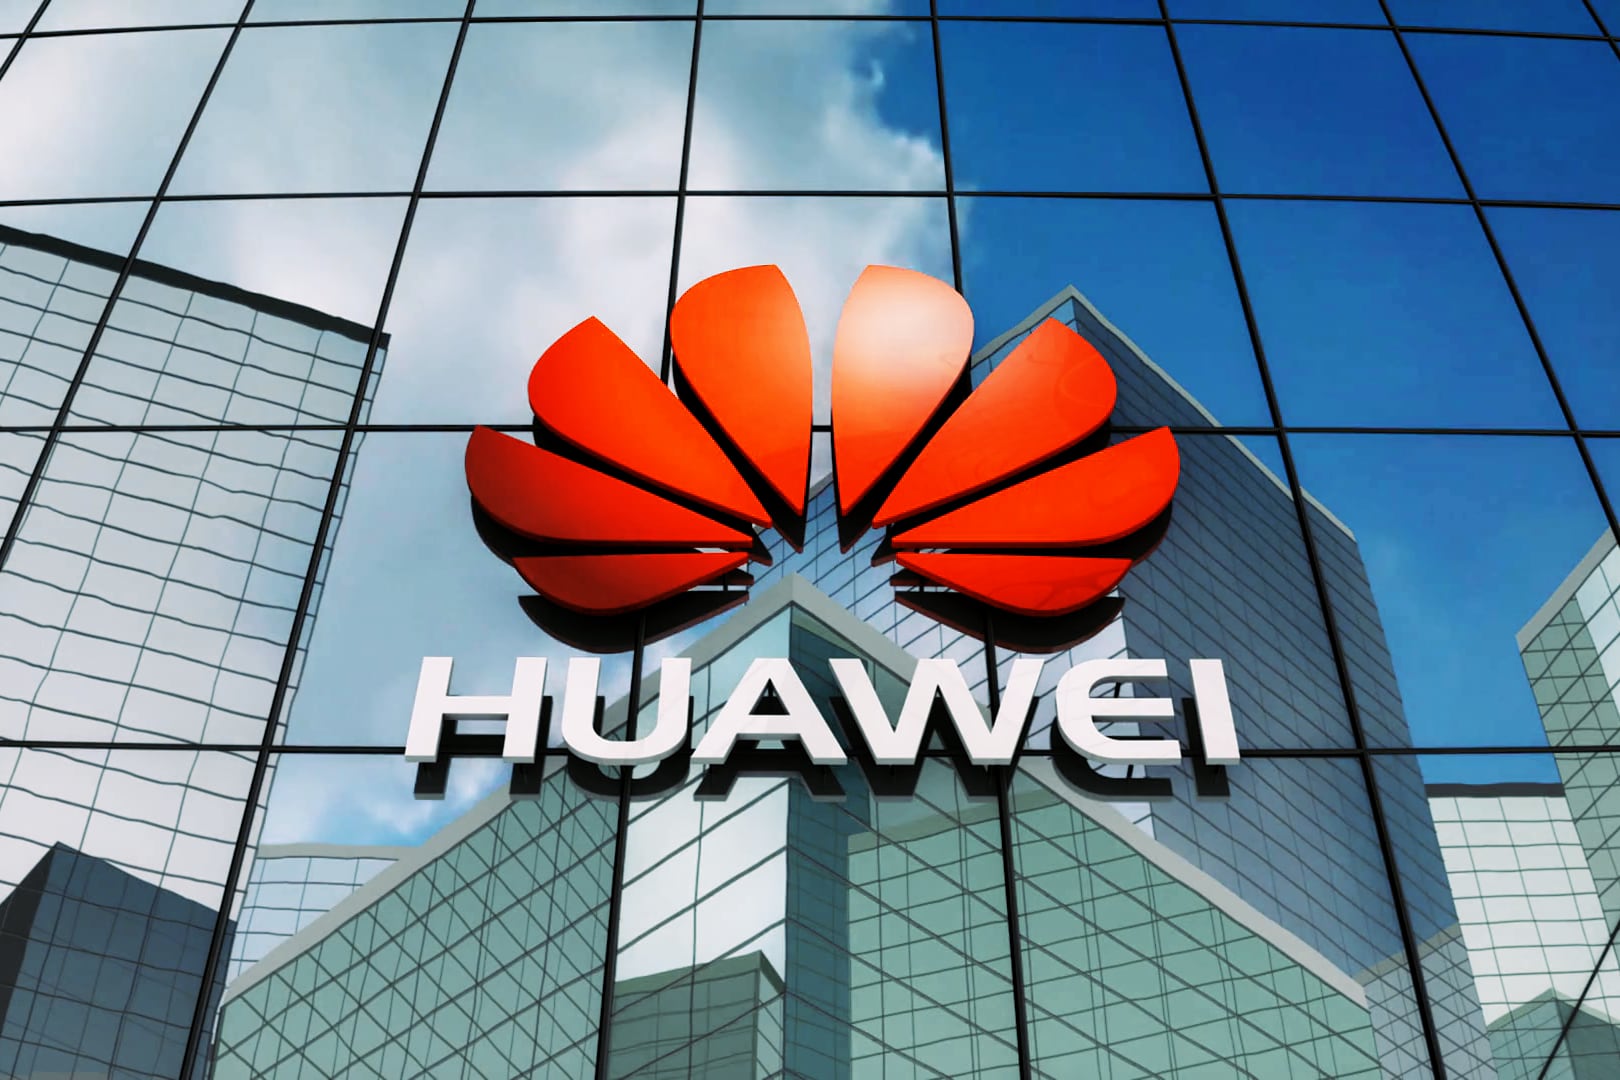 Gli Stati Uniti hanno vietato la vendita e l'importazione di apparecchiature Huawei e ZTE per timore di spiare gli americani